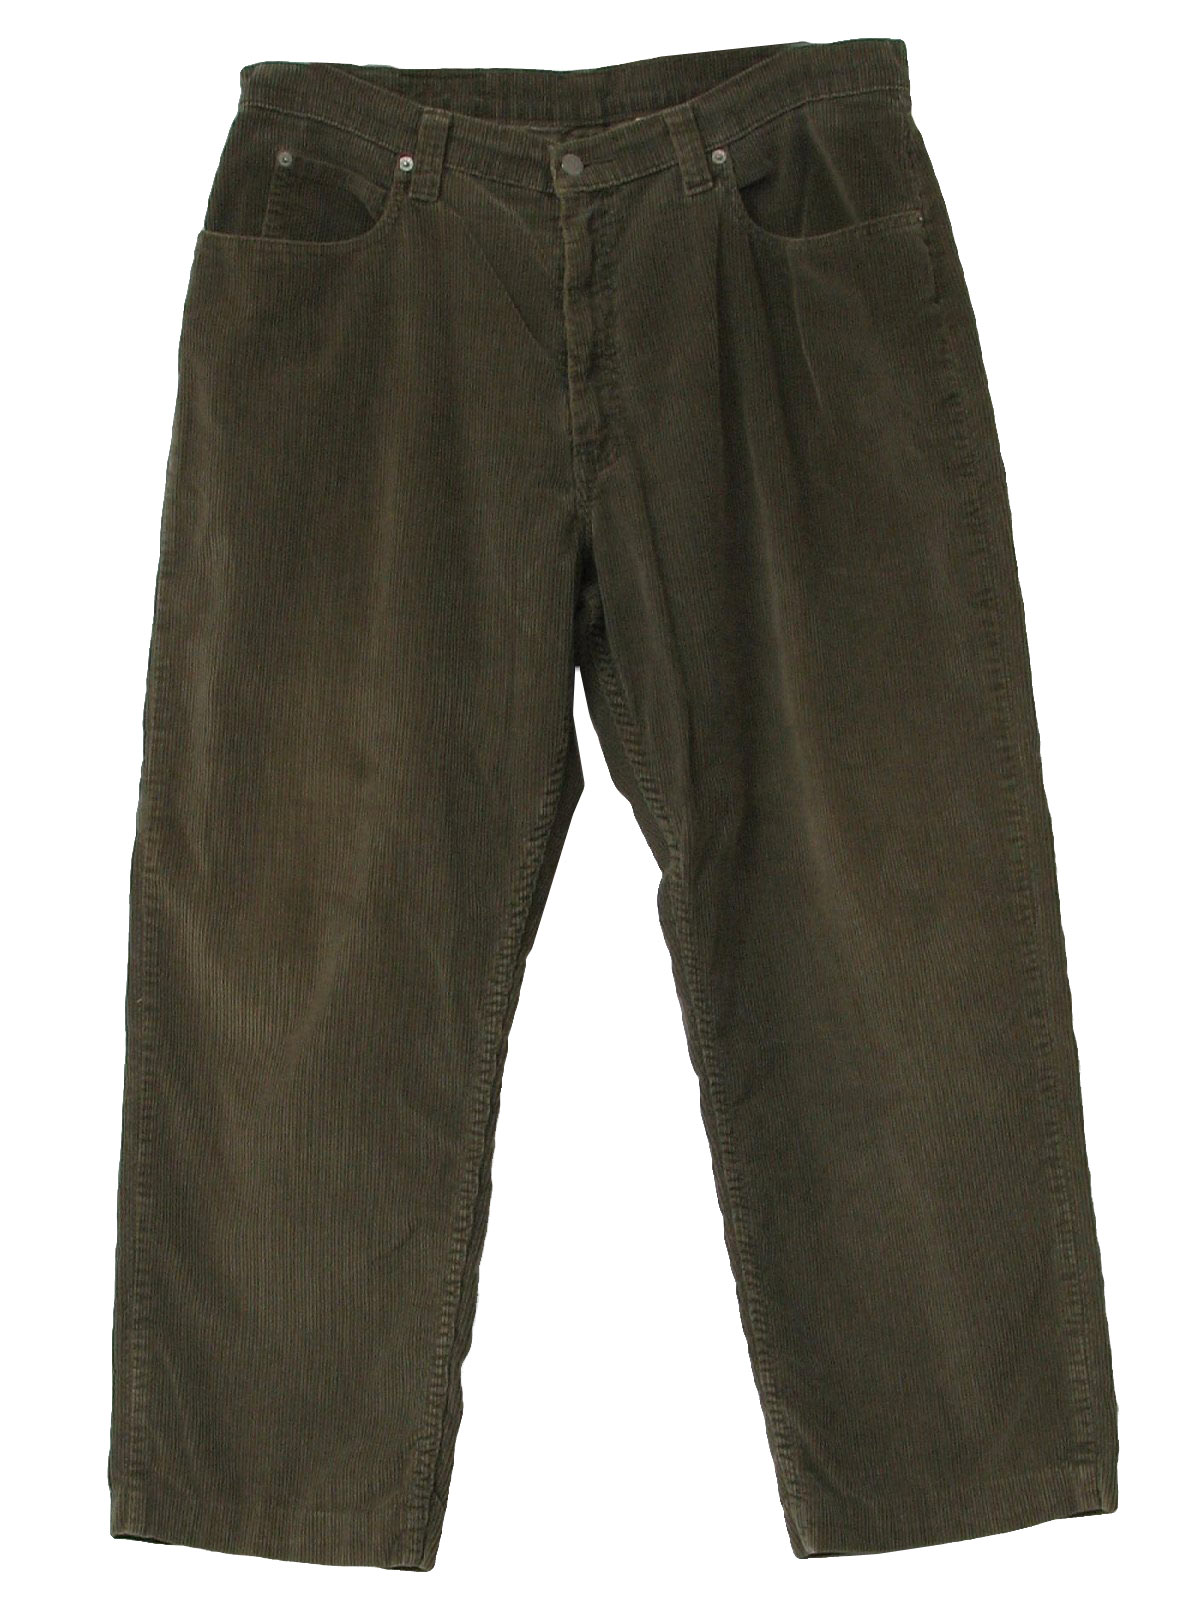 90s Retro Pants: 90s -Levis- Mens khaki cotton polyester corduroy wide ...